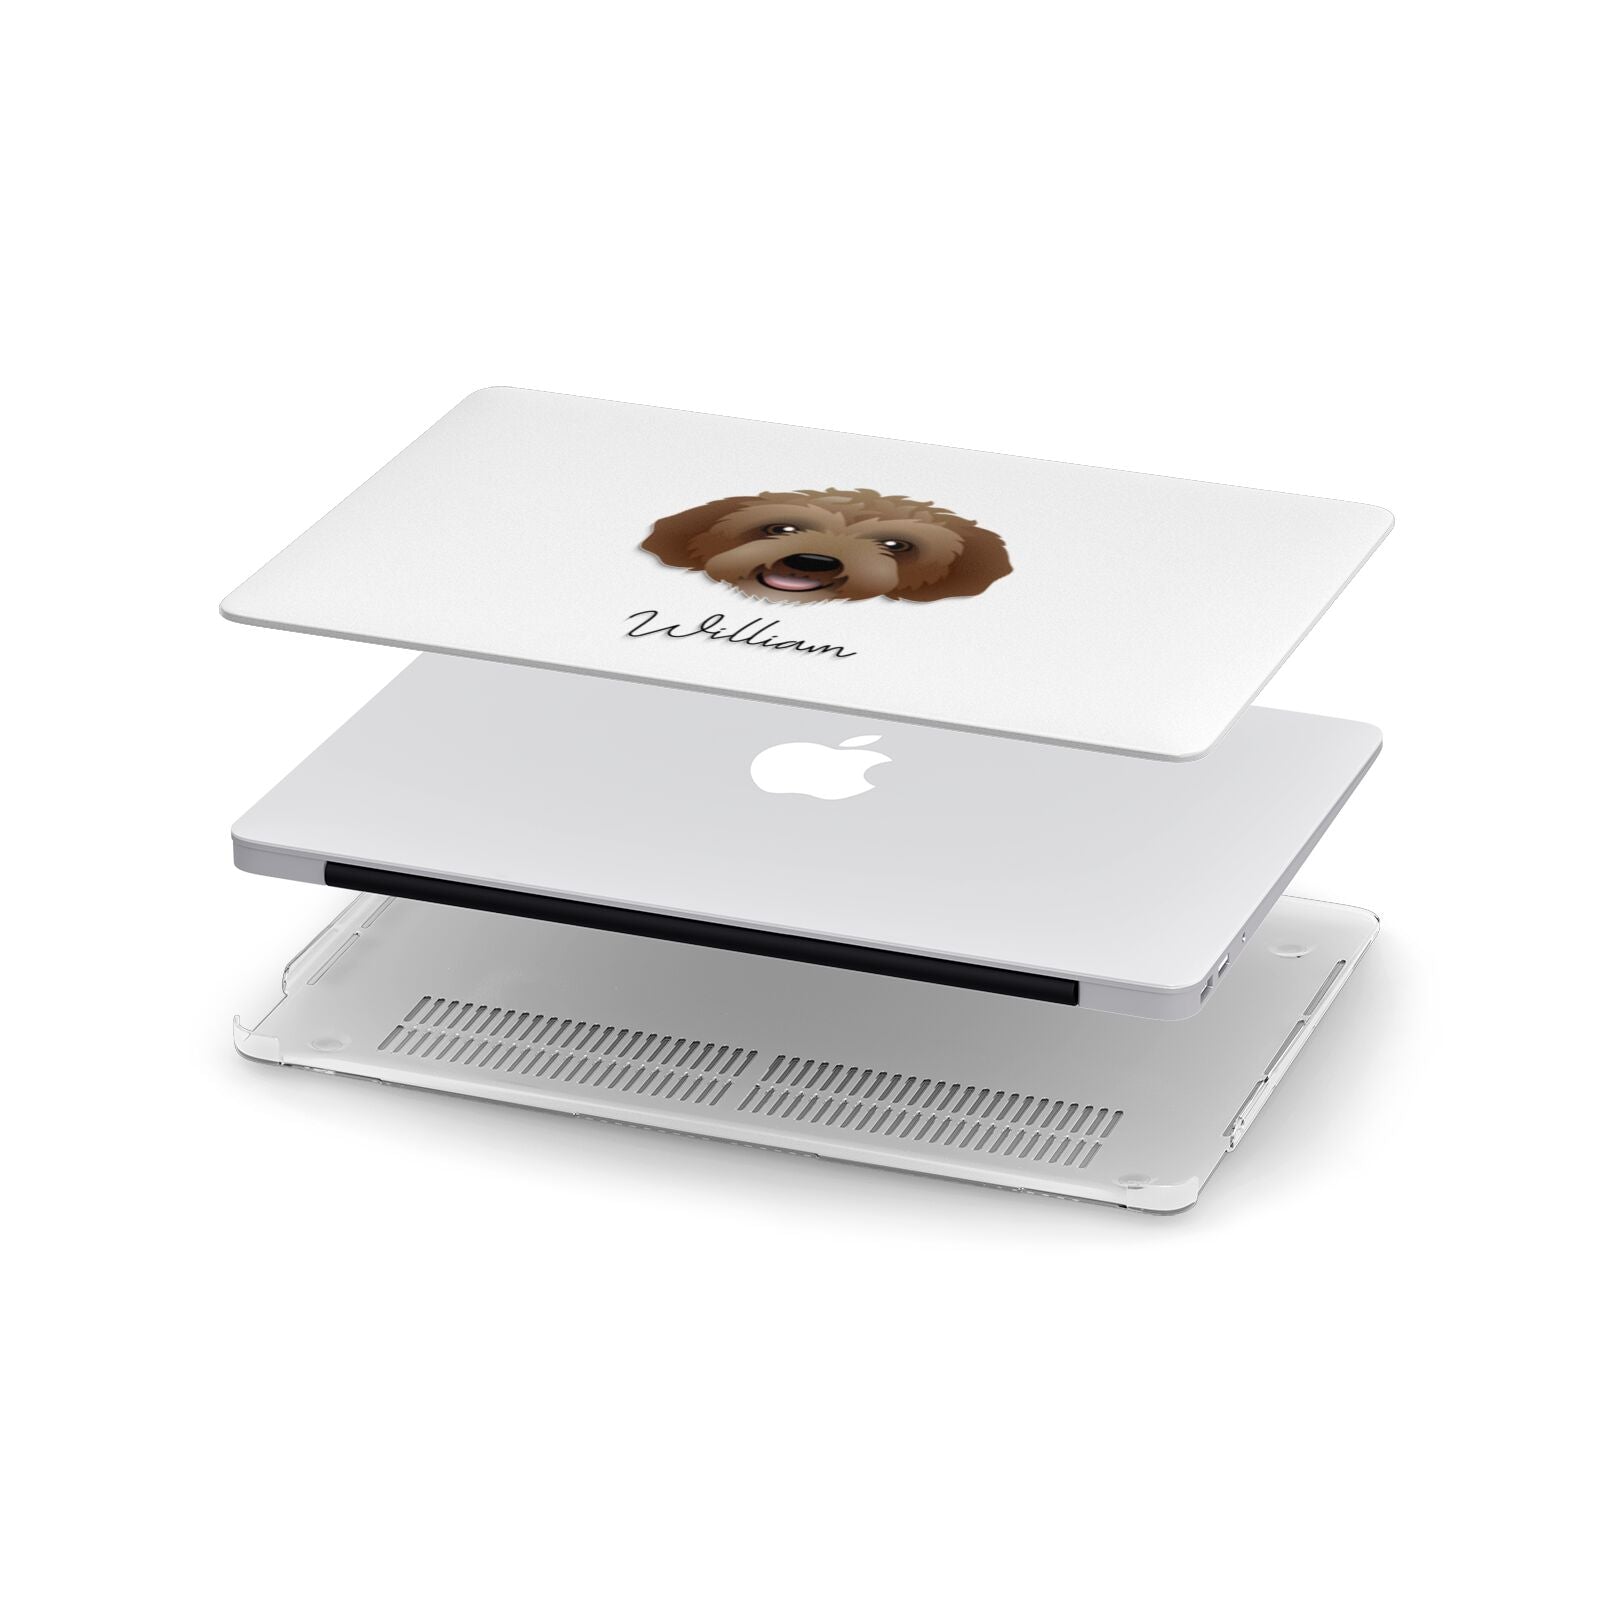 Labradoodle Personalised Apple MacBook Case in Detail